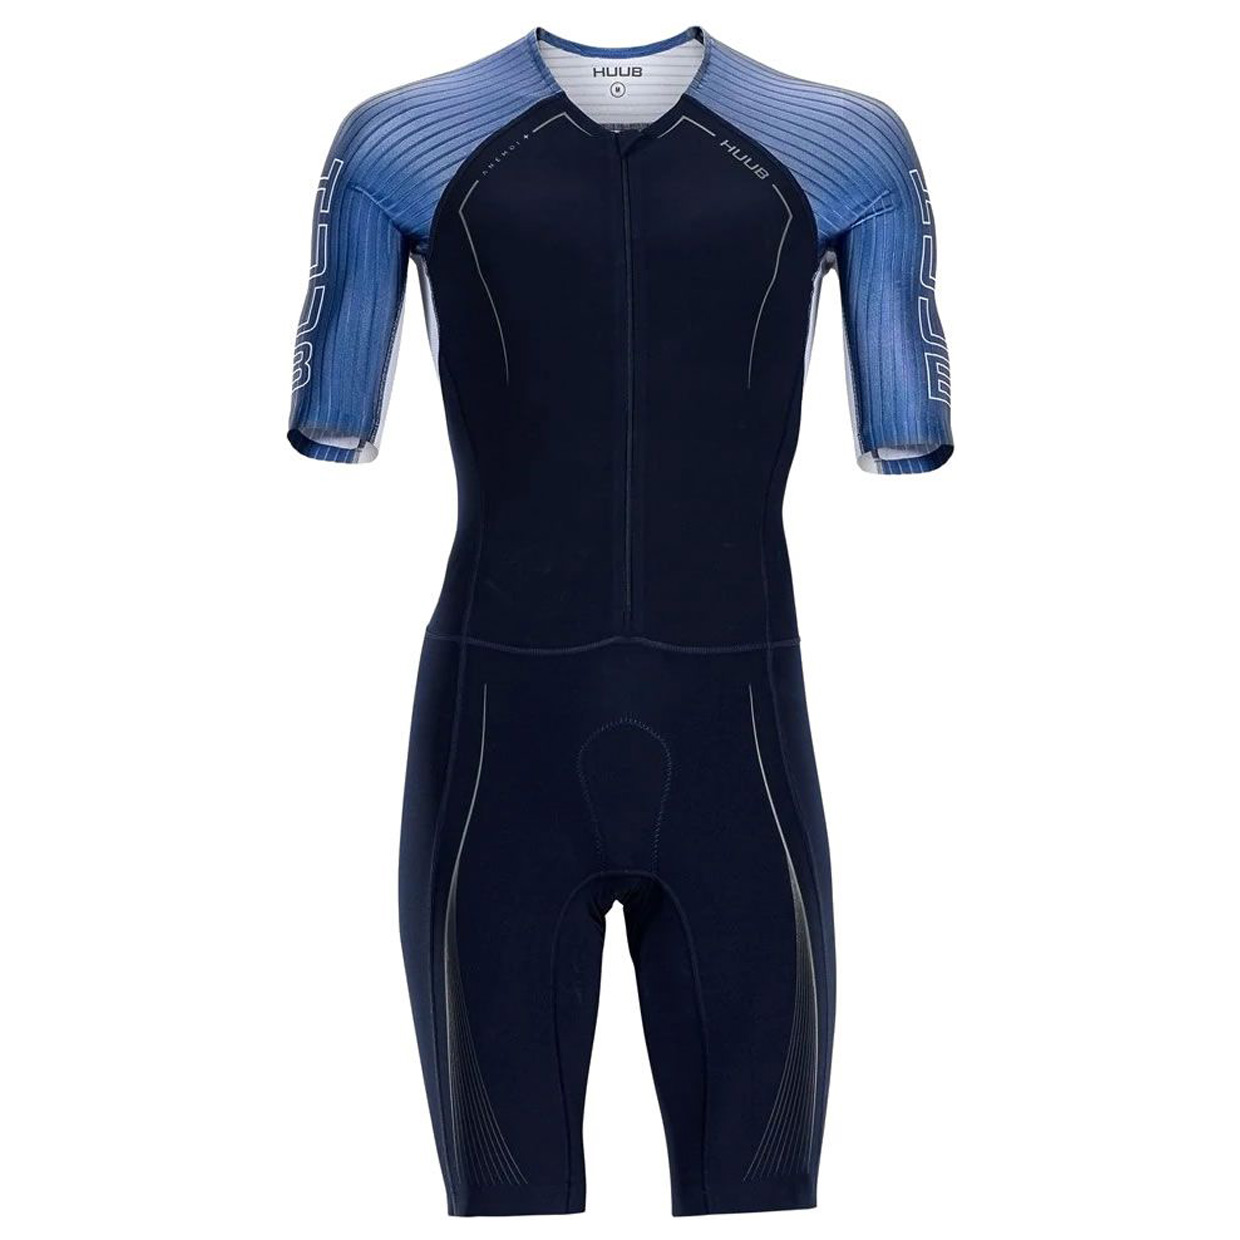 Herren Triathlonanzug Anemoi Aero + Flatlock Tri Suit